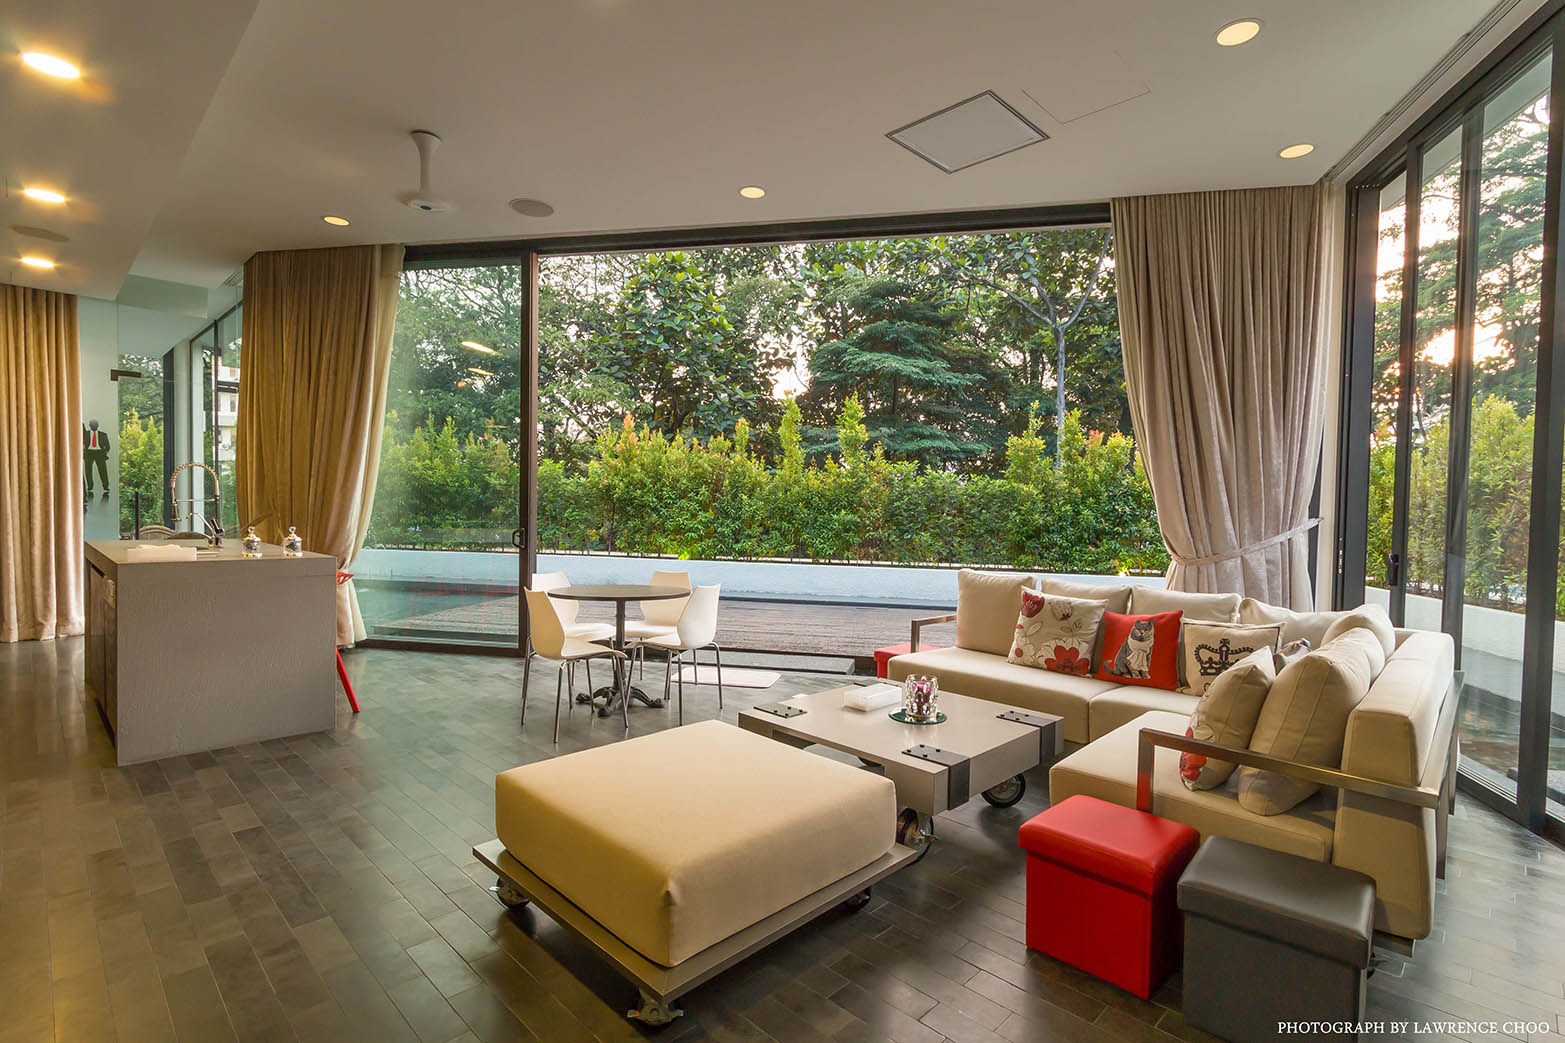 Raja Chulan Bungalow - 6 Bedroom Modern House, MJ Kanny Architect MJ Kanny Architect 모던스타일 발코니, 베란다 & 테라스